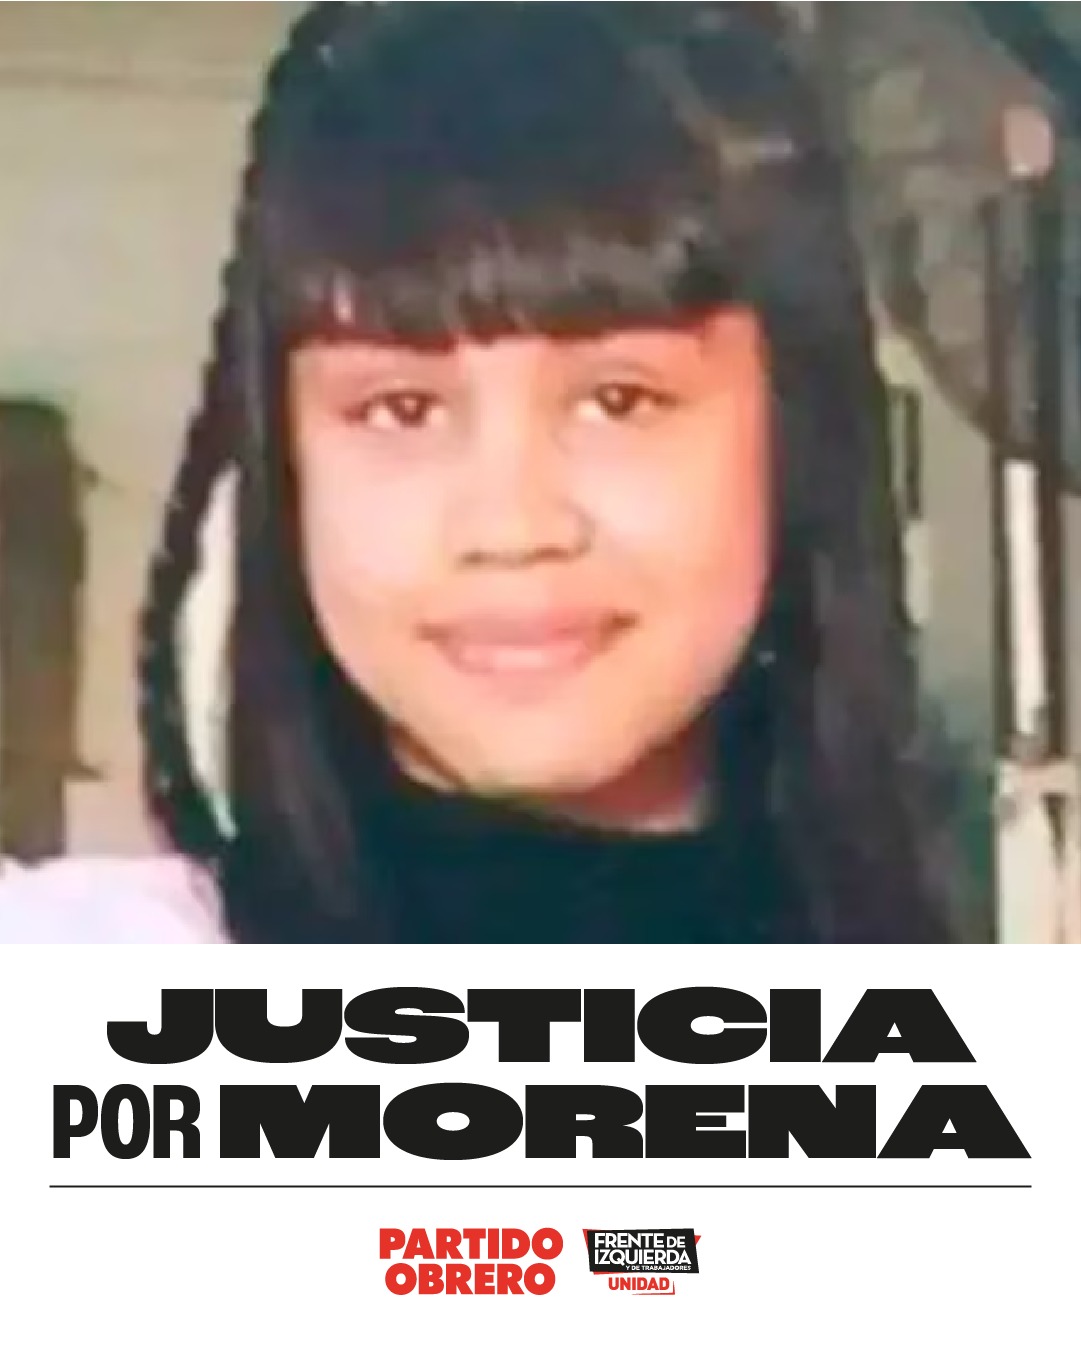 La lista del Frente de Izquierda y los Trabajadores Unidad encabezada por Solano y Ripoll suspende su acto de cierre, frente a la muerte de Morena Domínguez